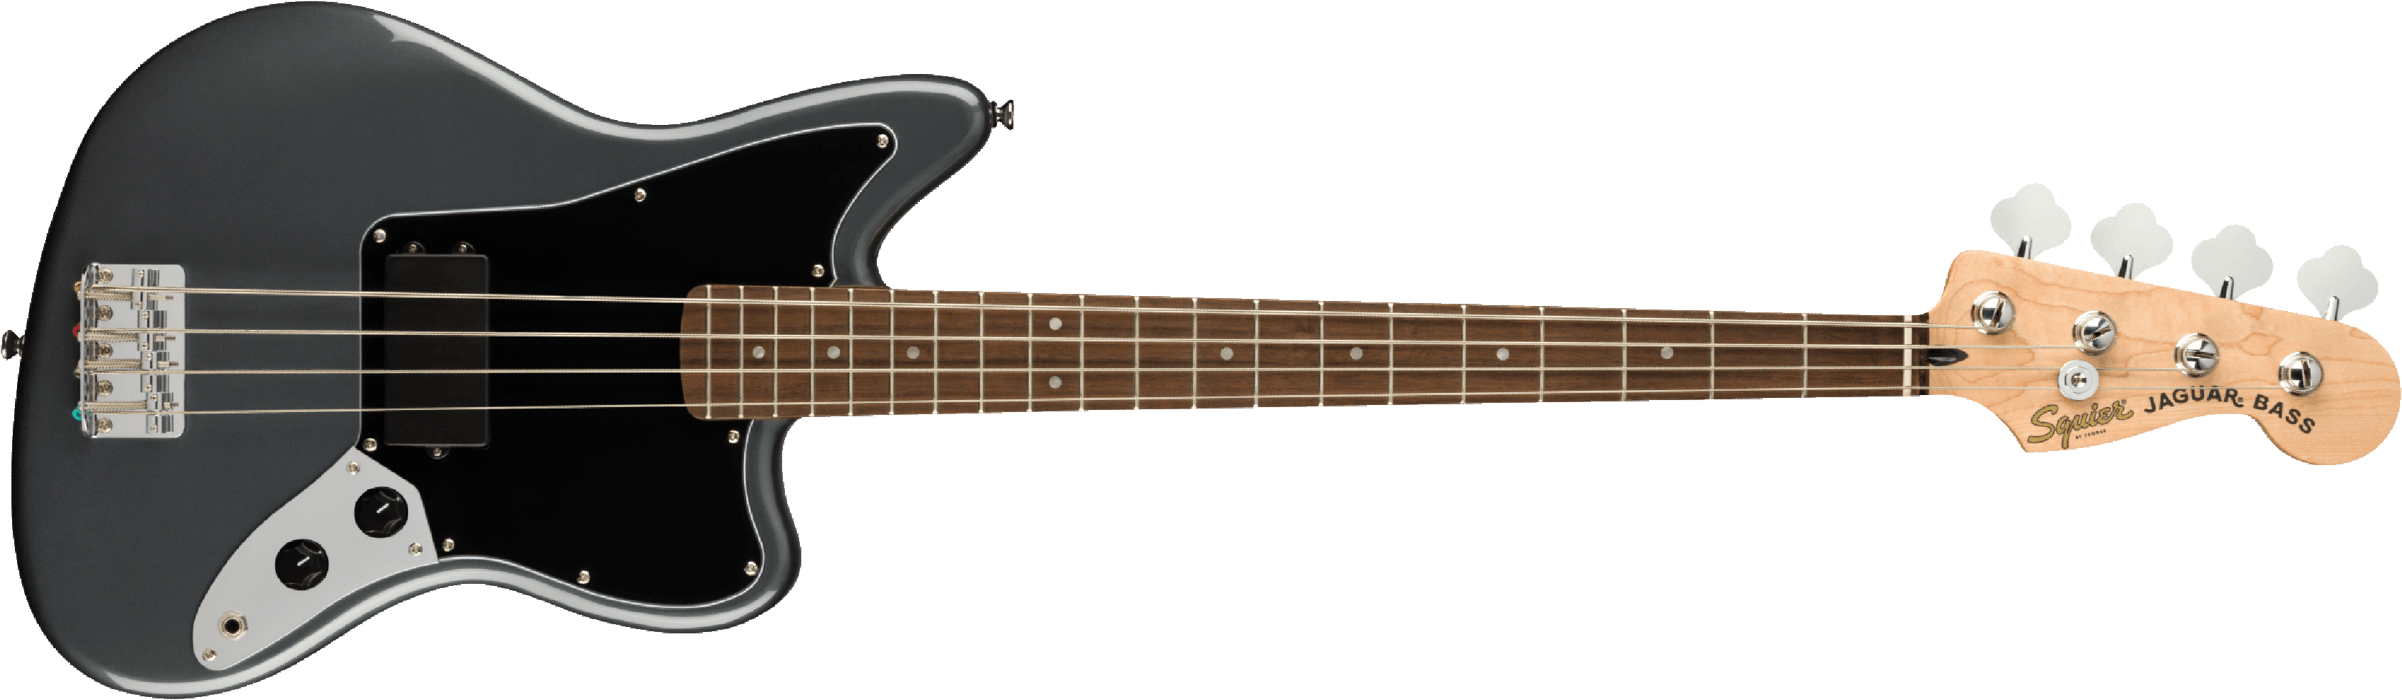 Squier Jaguar Bass Affinity 2021 Lau - Charcoal Frost Metallic - Bajo eléctrico de cuerpo sólido - Main picture